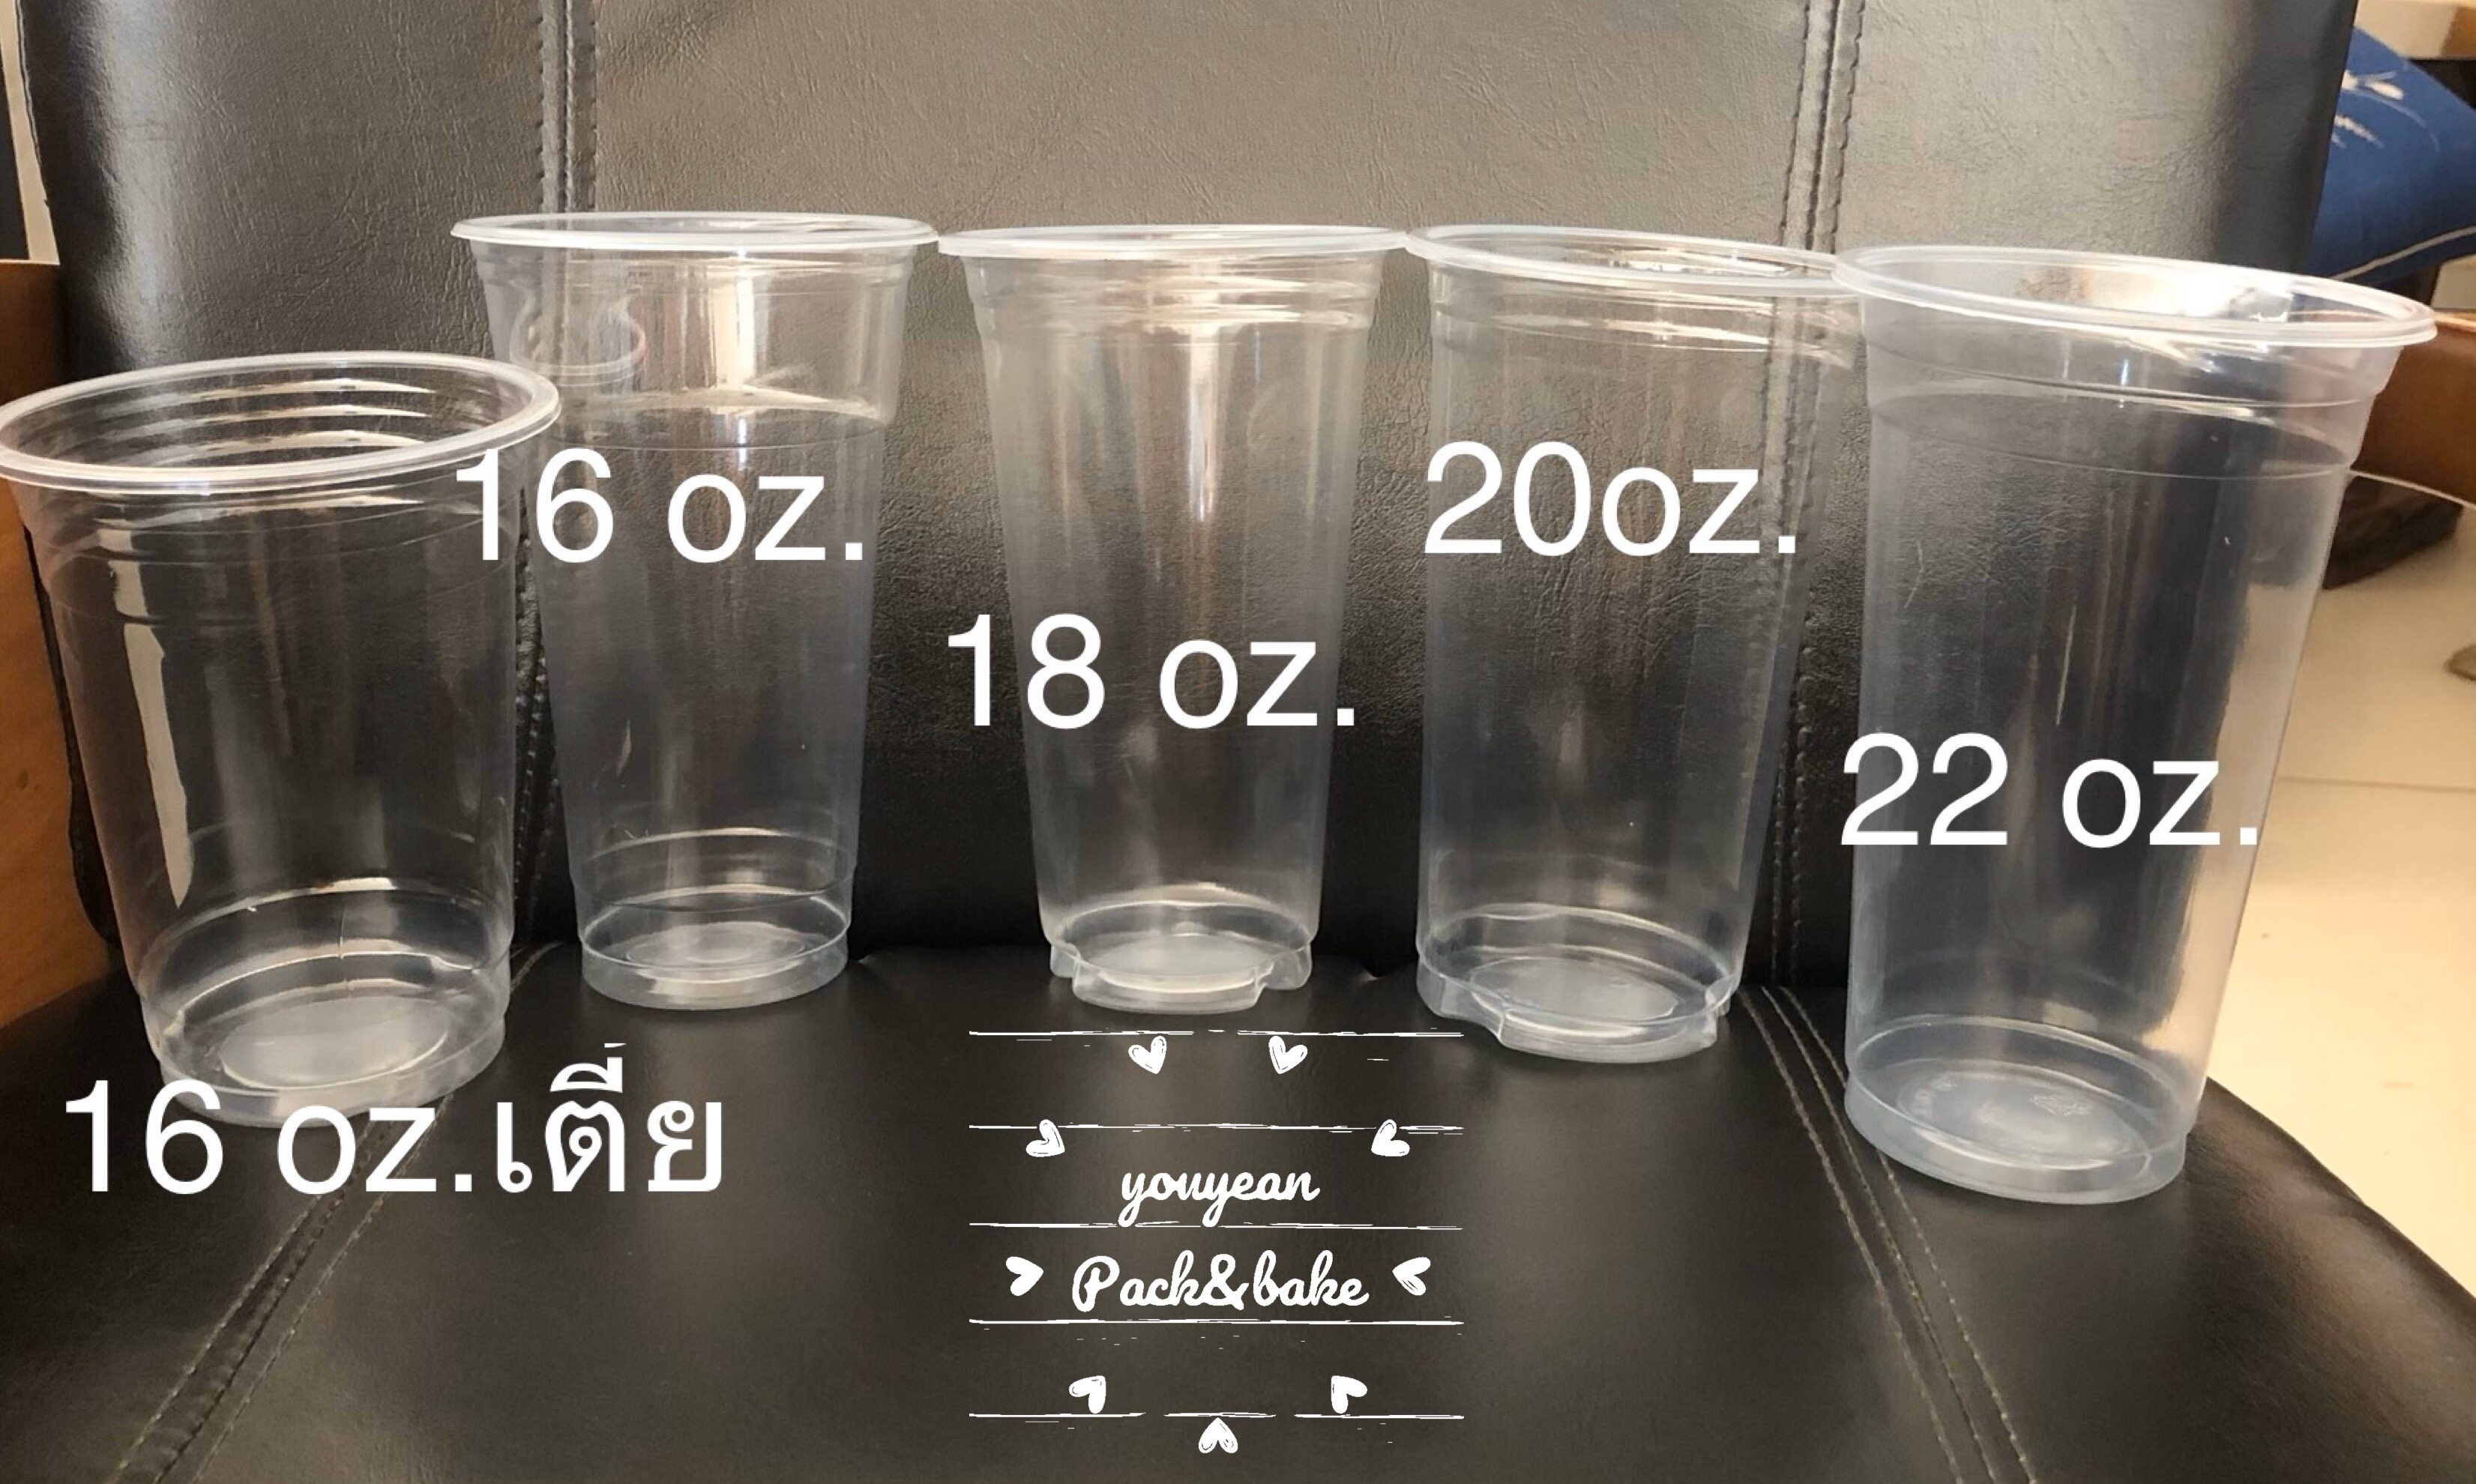 แก้วพลาสติก เรียบใสเนื้อ pp ขนาด 16 ออนซ์,18 ออนซ์,20 ออนซ์ และ 22 ออนซ์ มีทั้งแบบฝาเรียบ,ฝาโดมและฝาฮาฟ จำนวน 50 ชุด (แก้ว+ฝา)